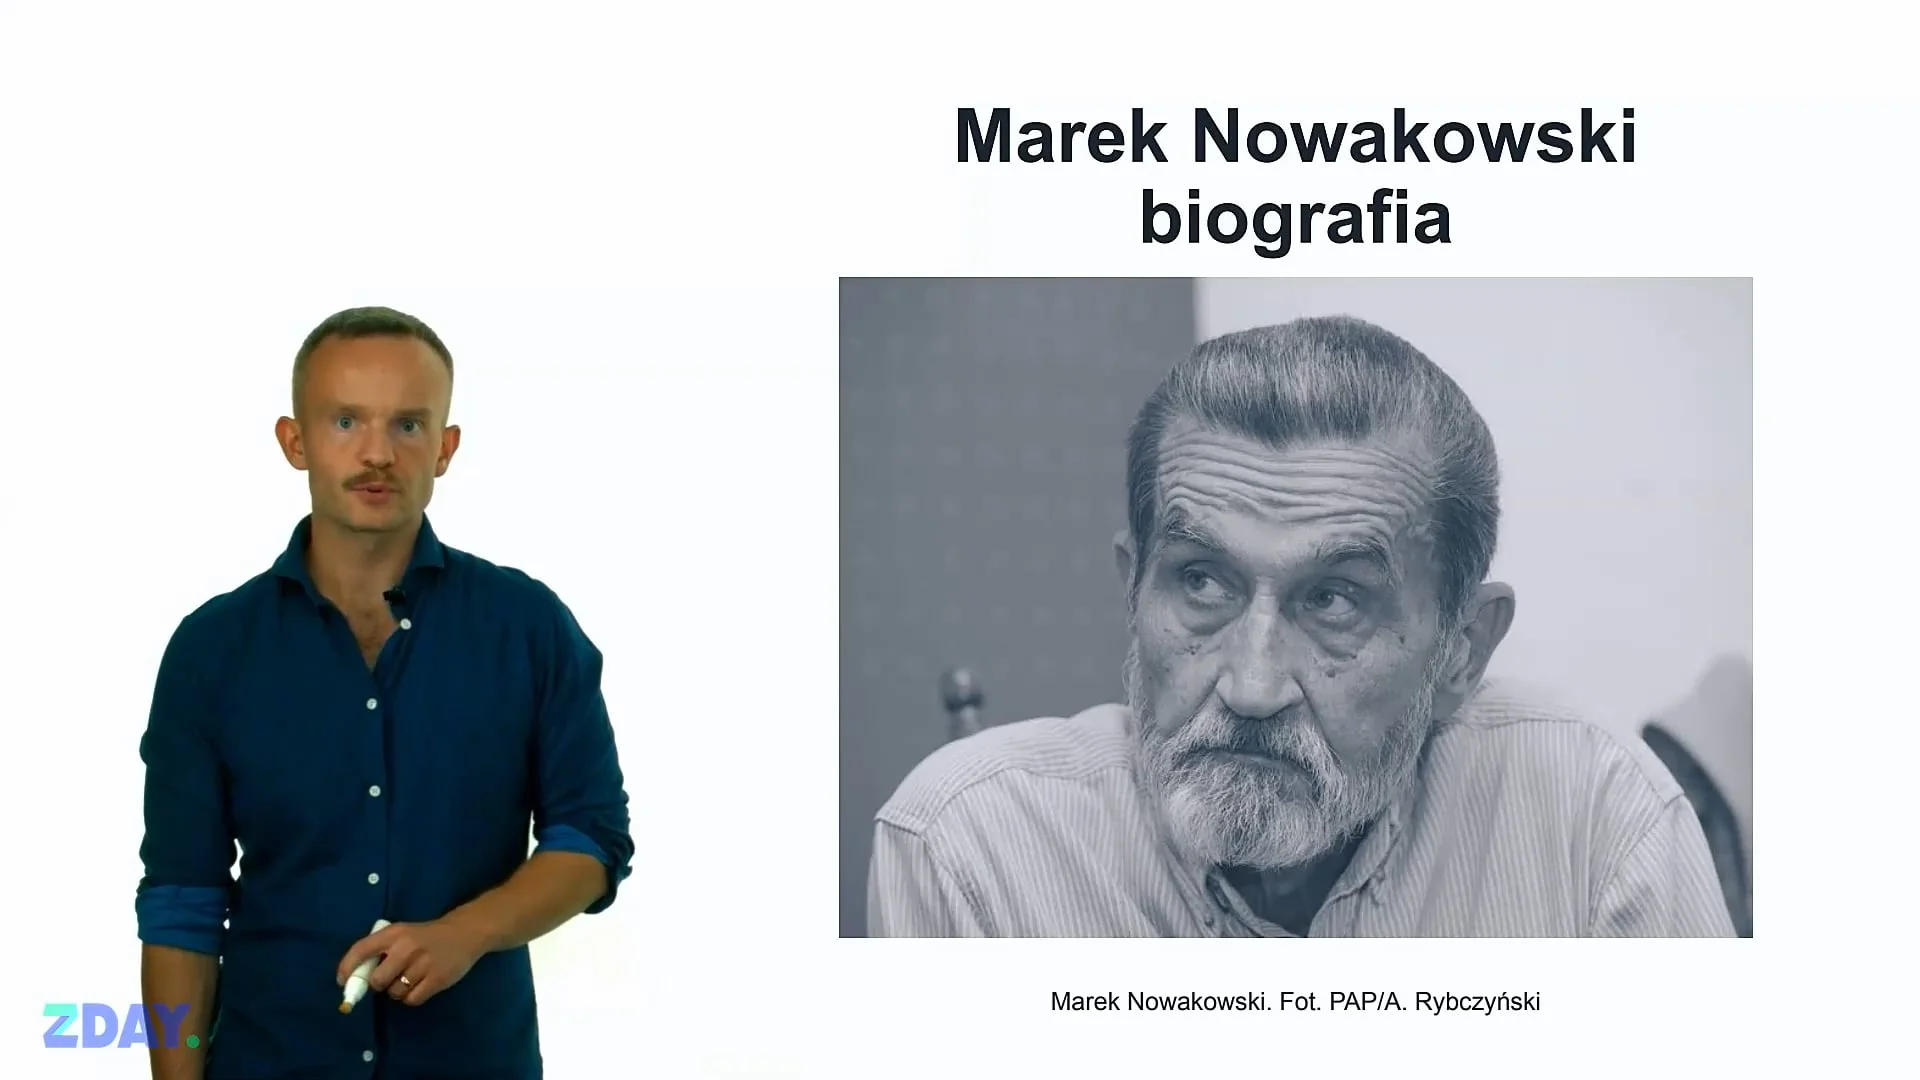 Miniaturka materiału wideo na temat: Marek Nowakowski – o autorze. Kliknij, aby obejrzeć materiał.